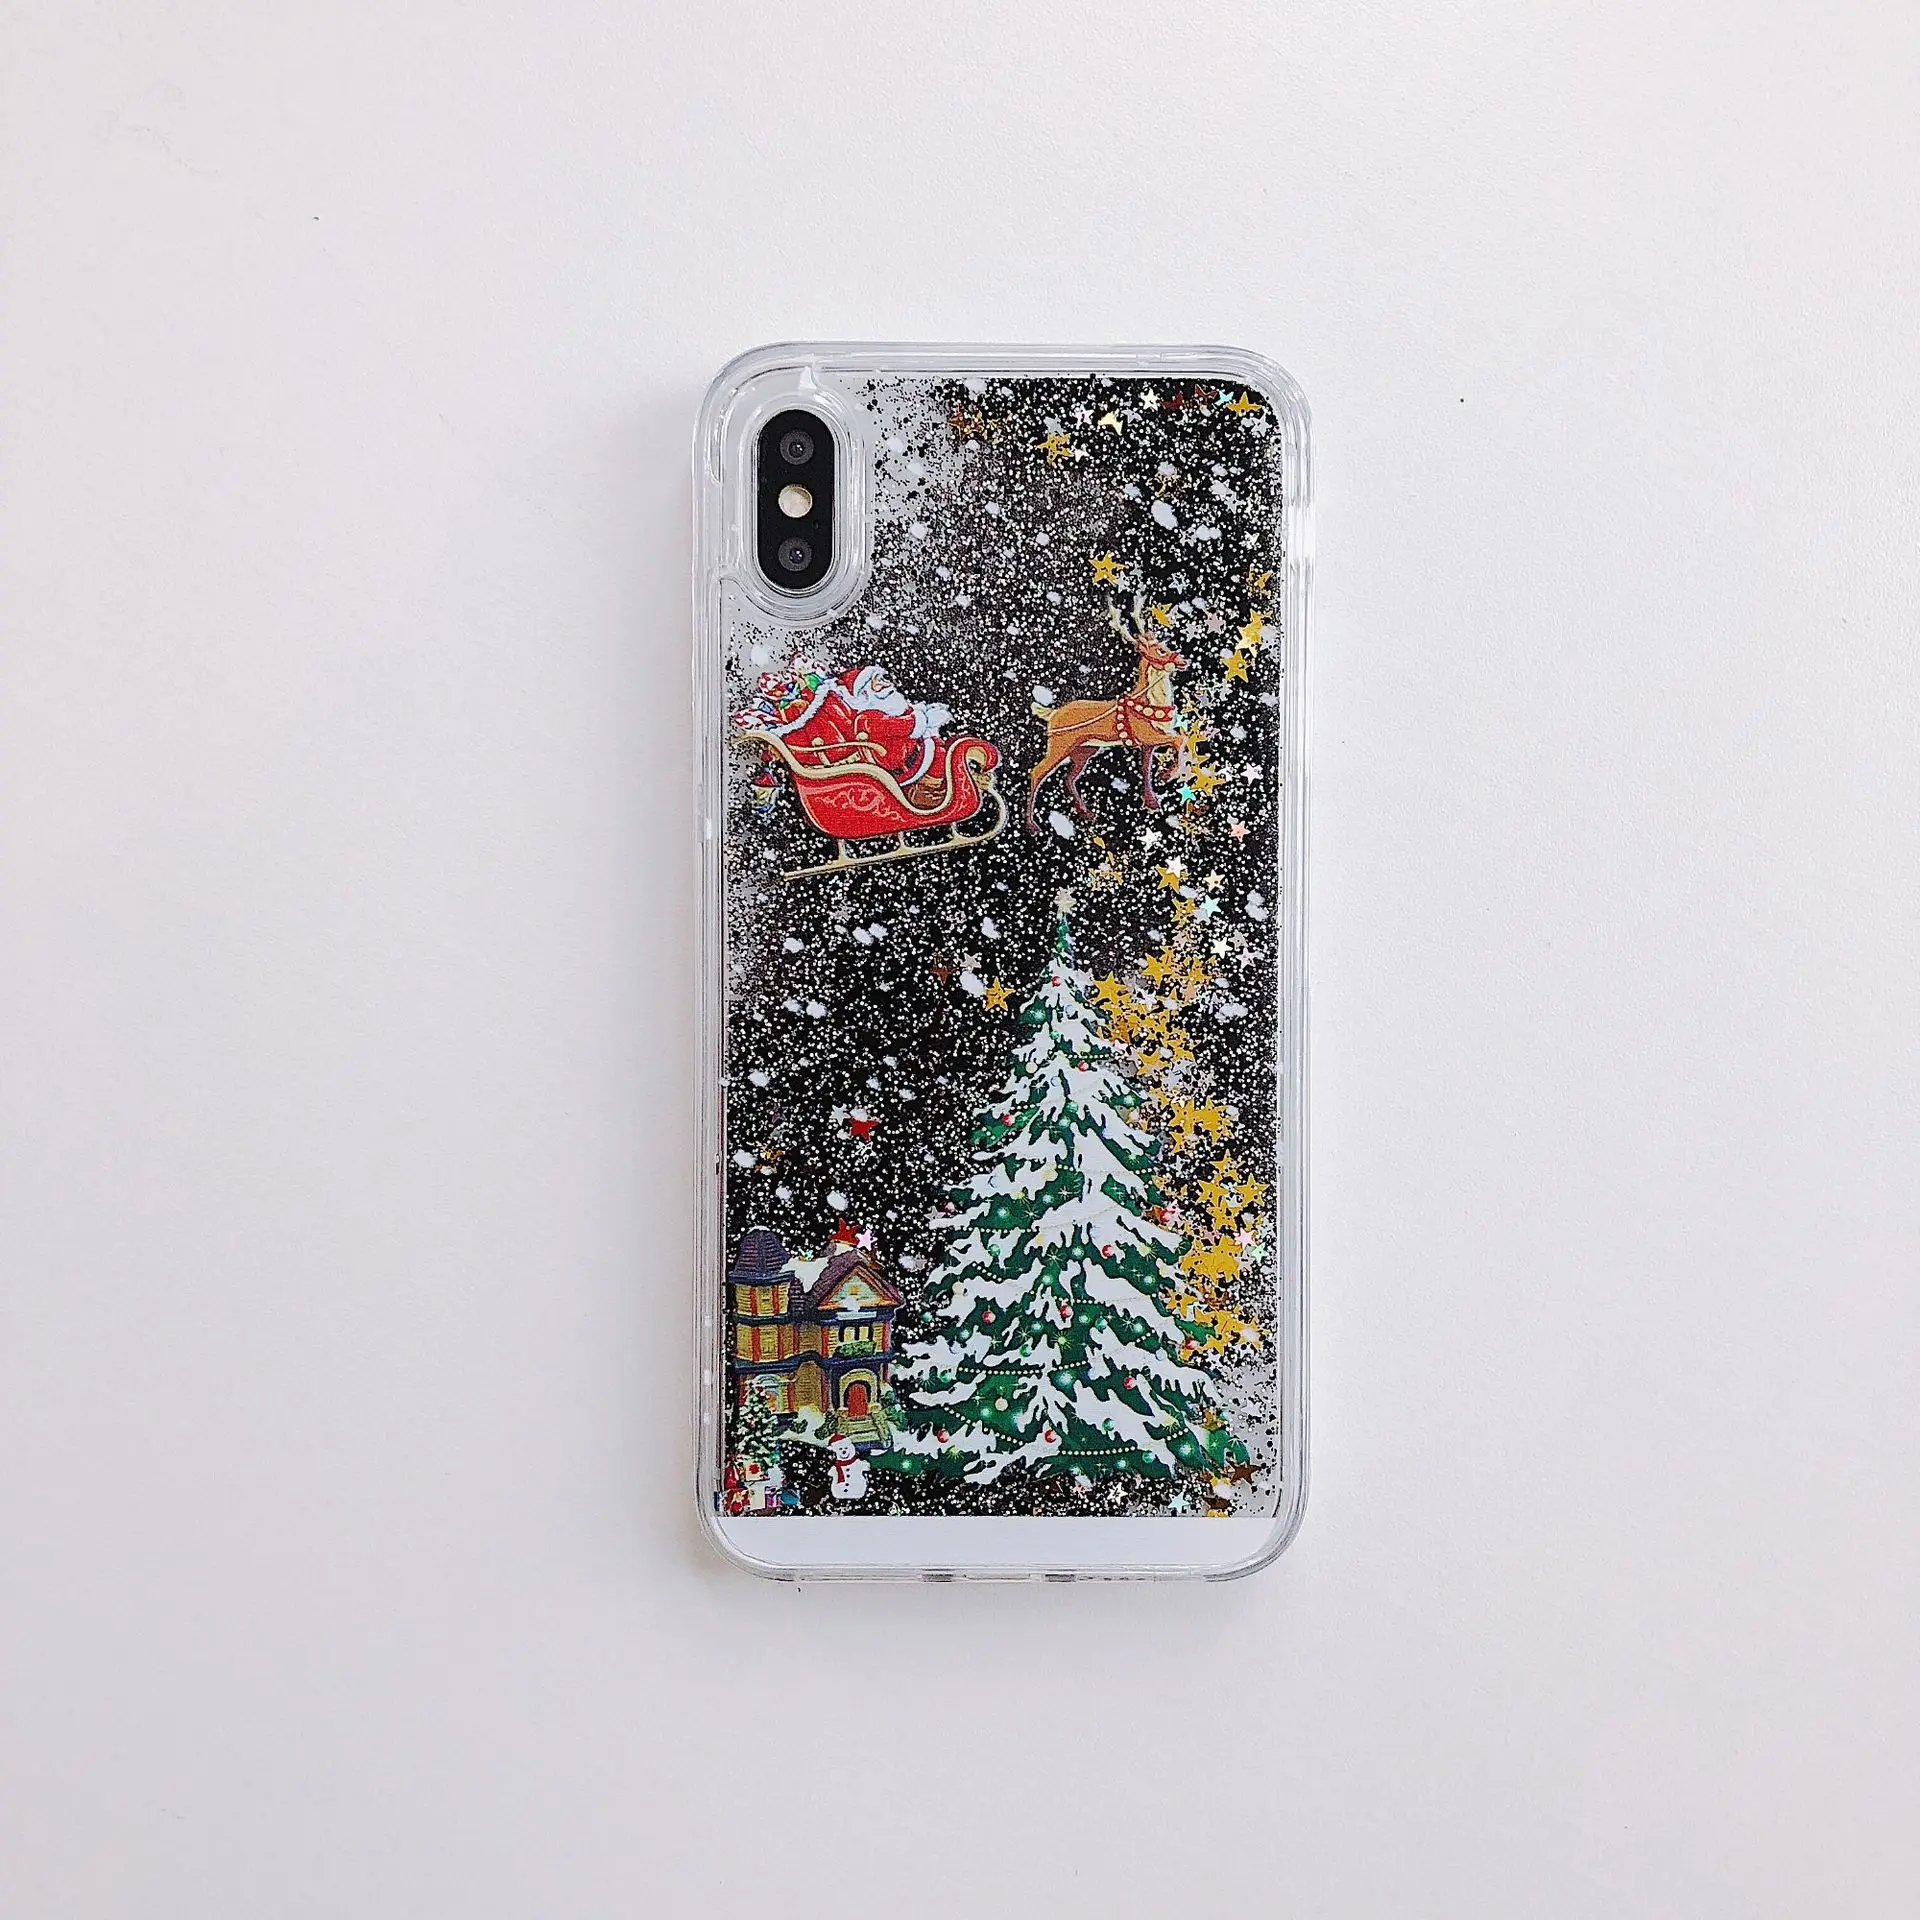 Чехол для телефона с изображением Санта Клауса лося для iPhone 11Pro Max XS Max Рождественский зыбучий песок позолоченный чехол для iPhone 11 XR 8 7 6 6S Plus